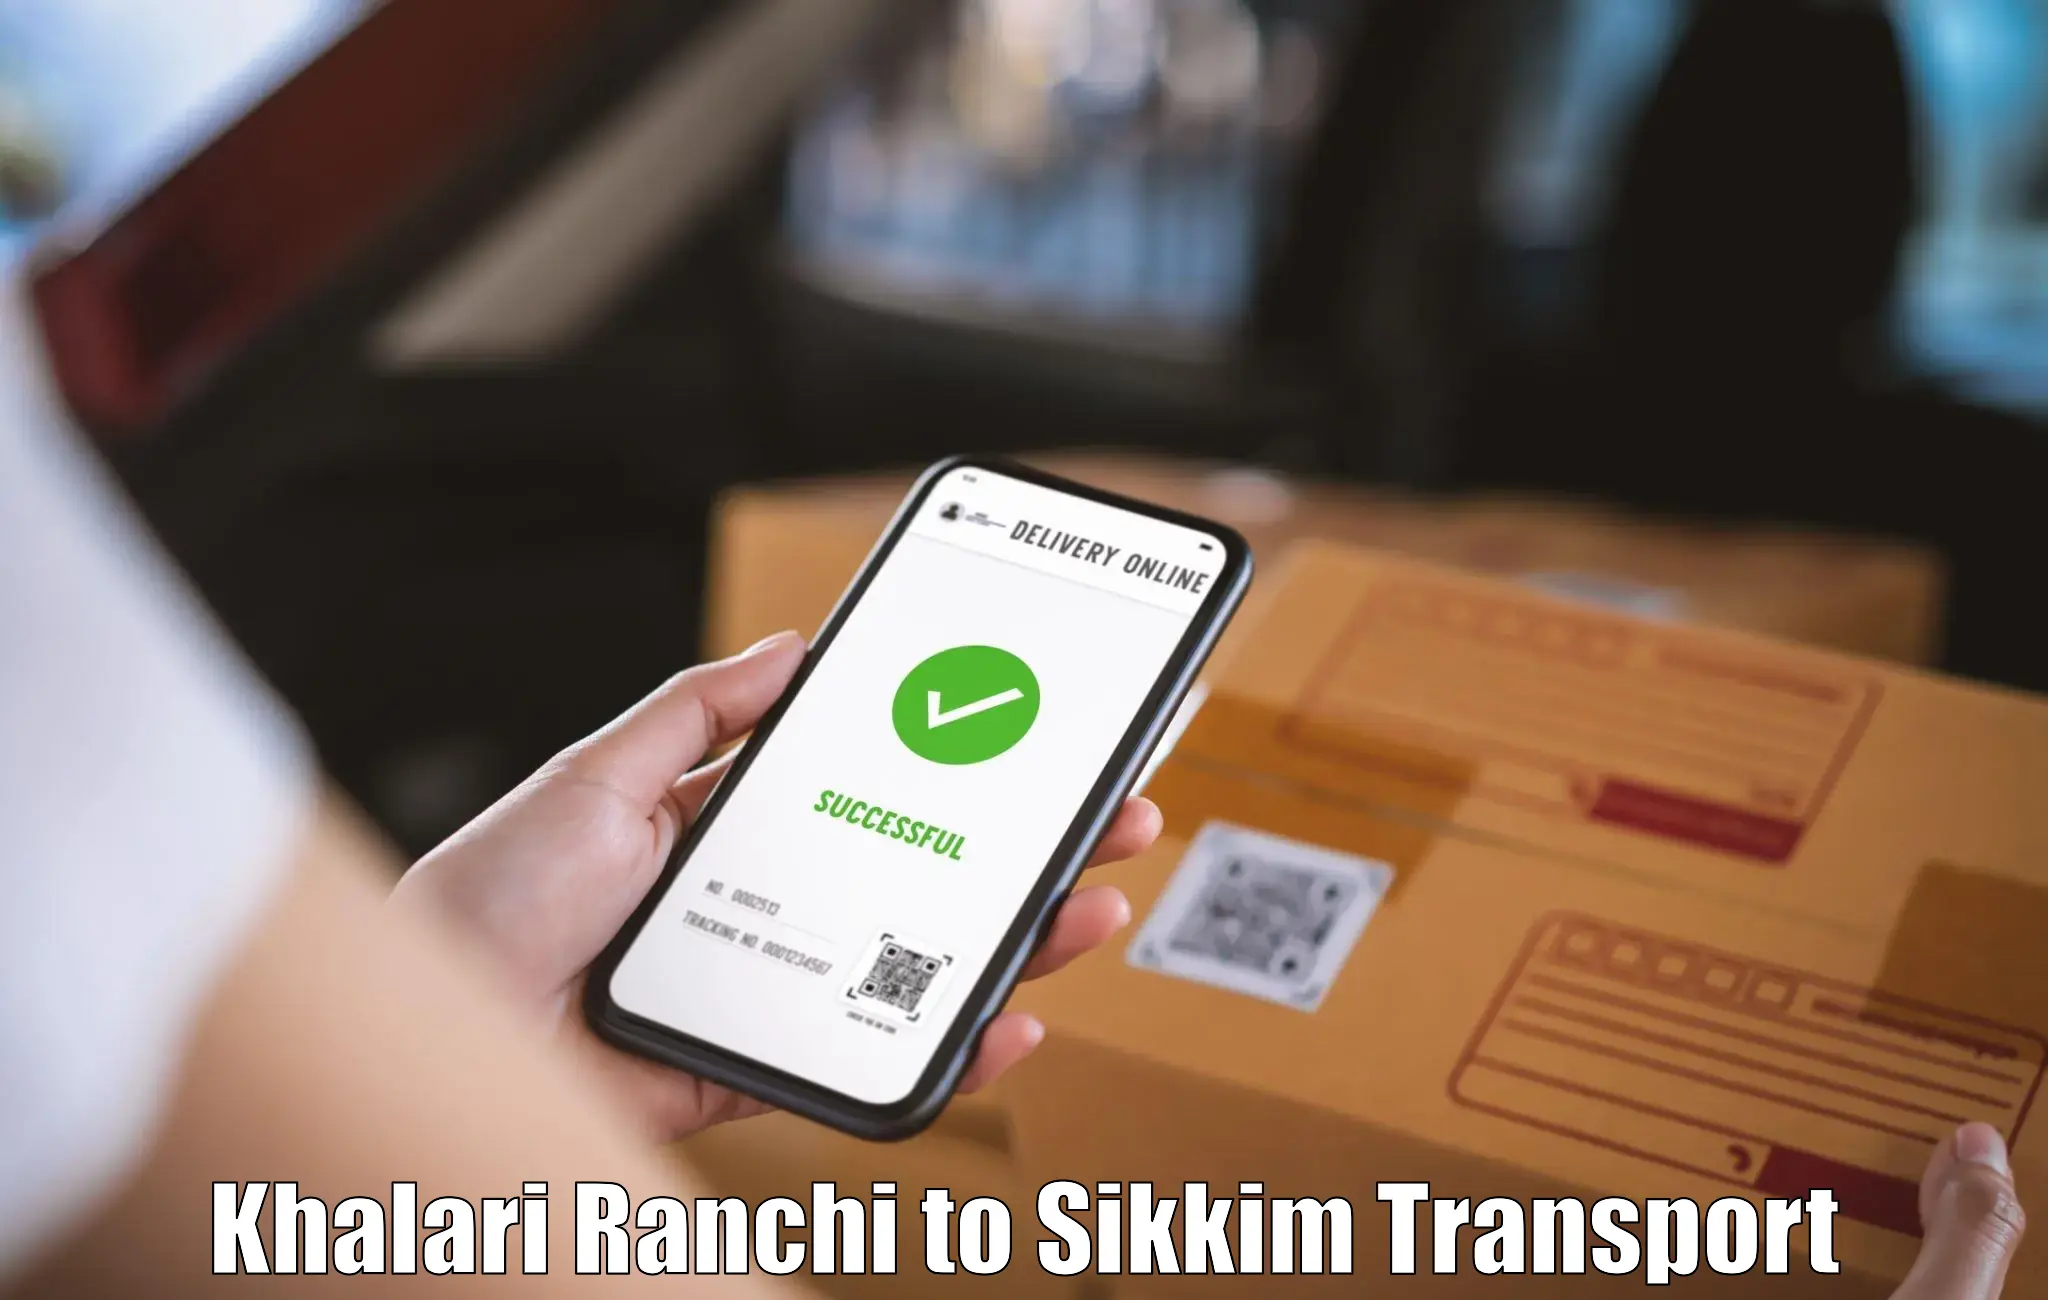 Transport in sharing in Khalari Ranchi to Gangtok